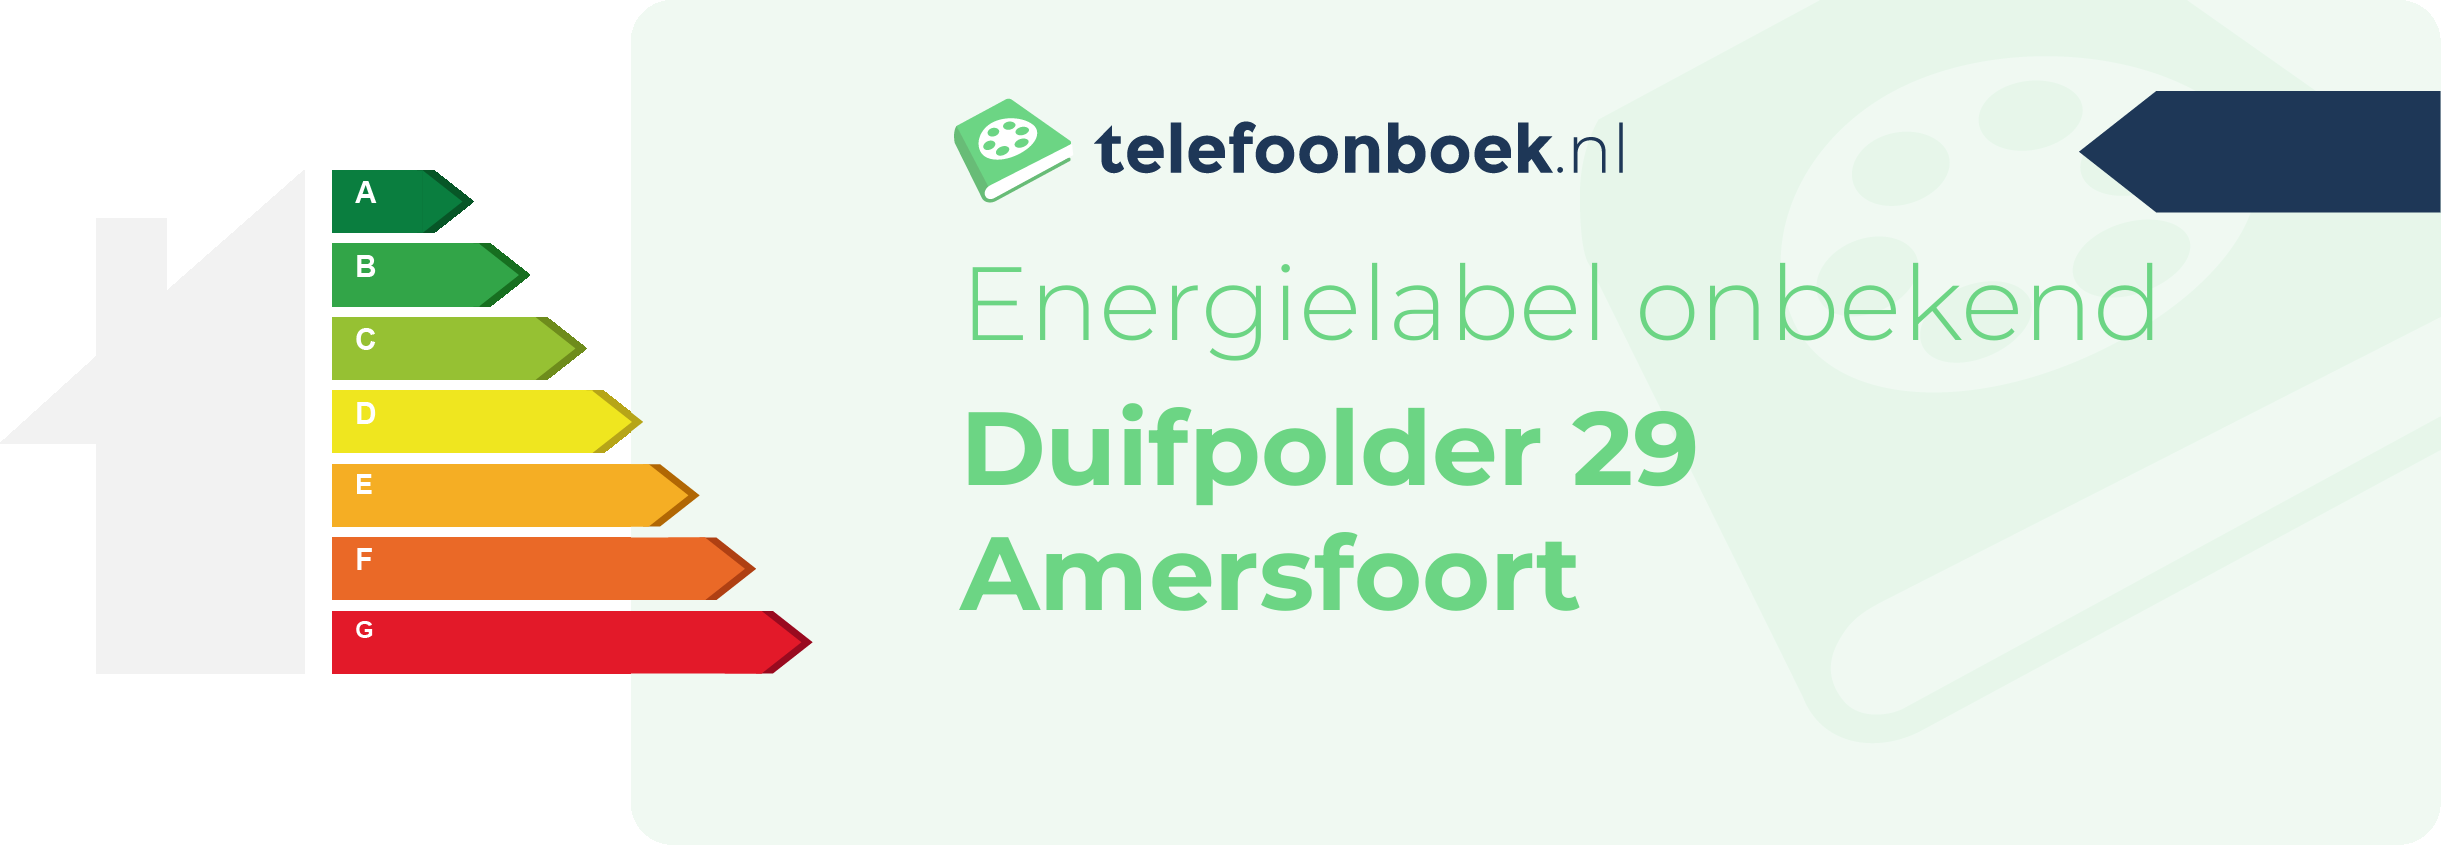 Energielabel Duifpolder 29 Amersfoort